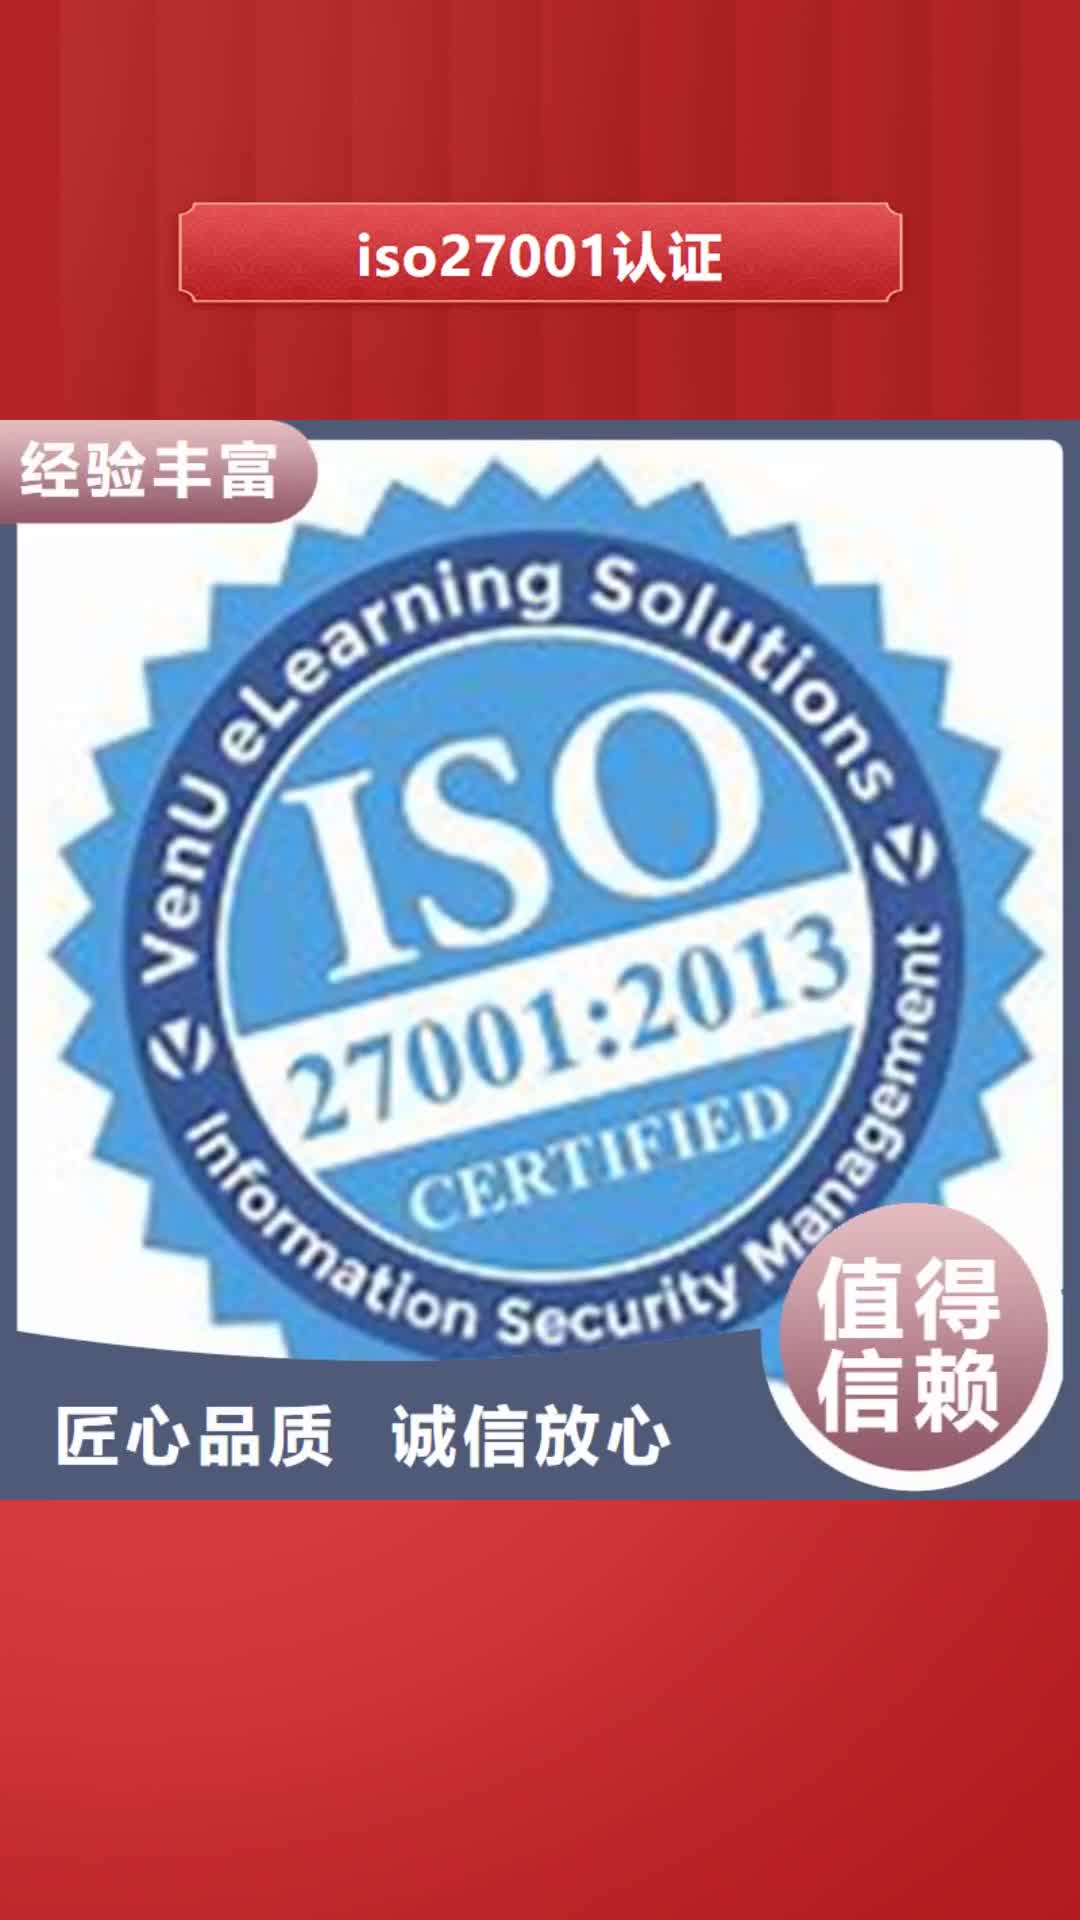 【长春 iso27001认证,ISO9001\ISO9000\ISO14001认证服务热情】